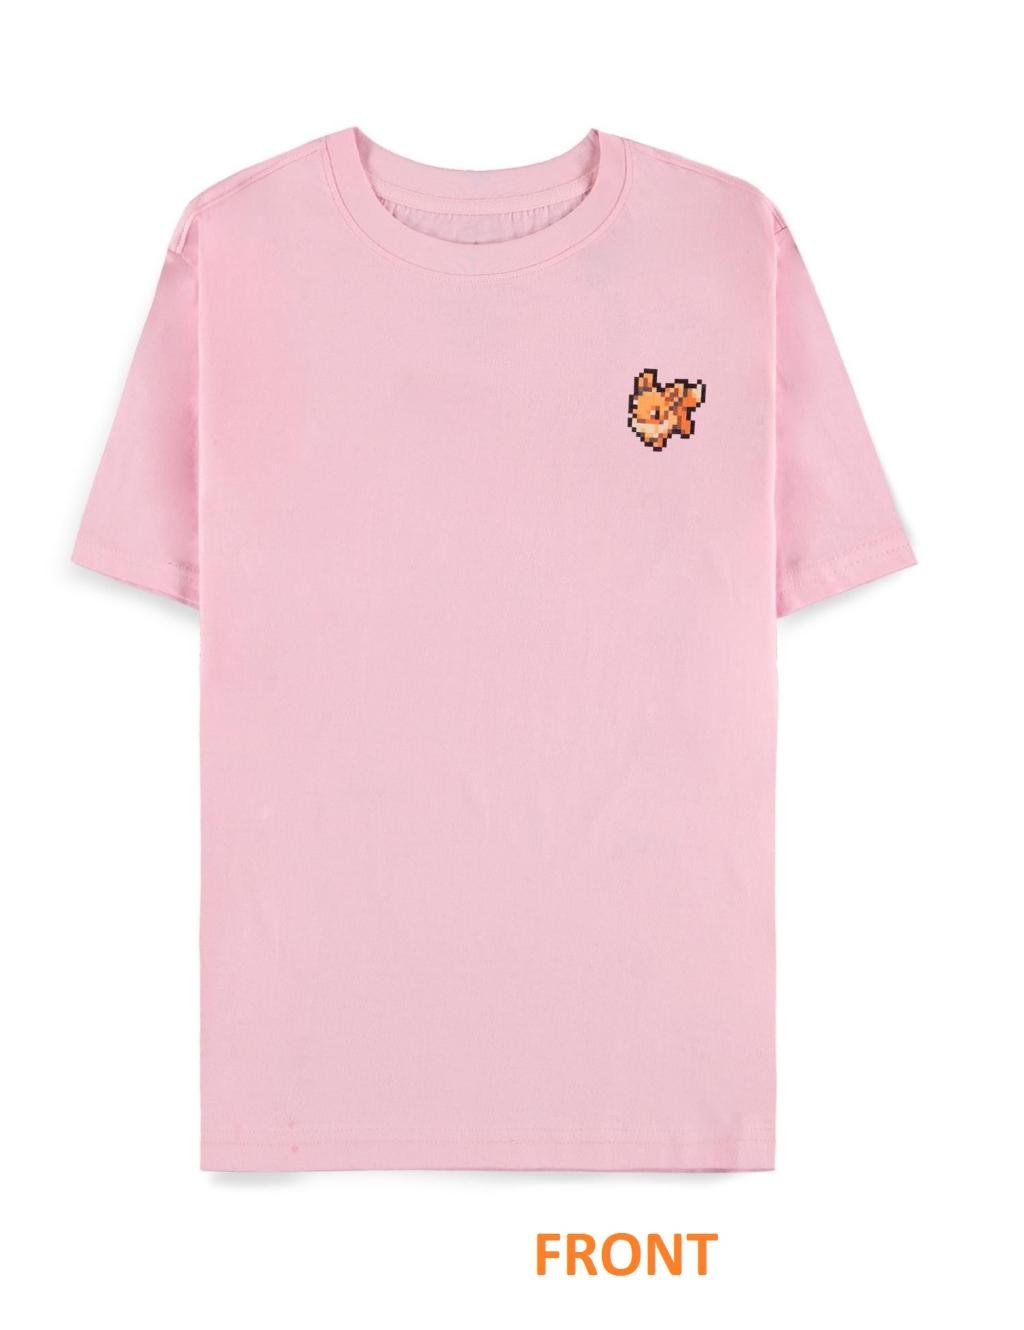 POKEMON - Pixel Eevee - Women T-Shirt (M)